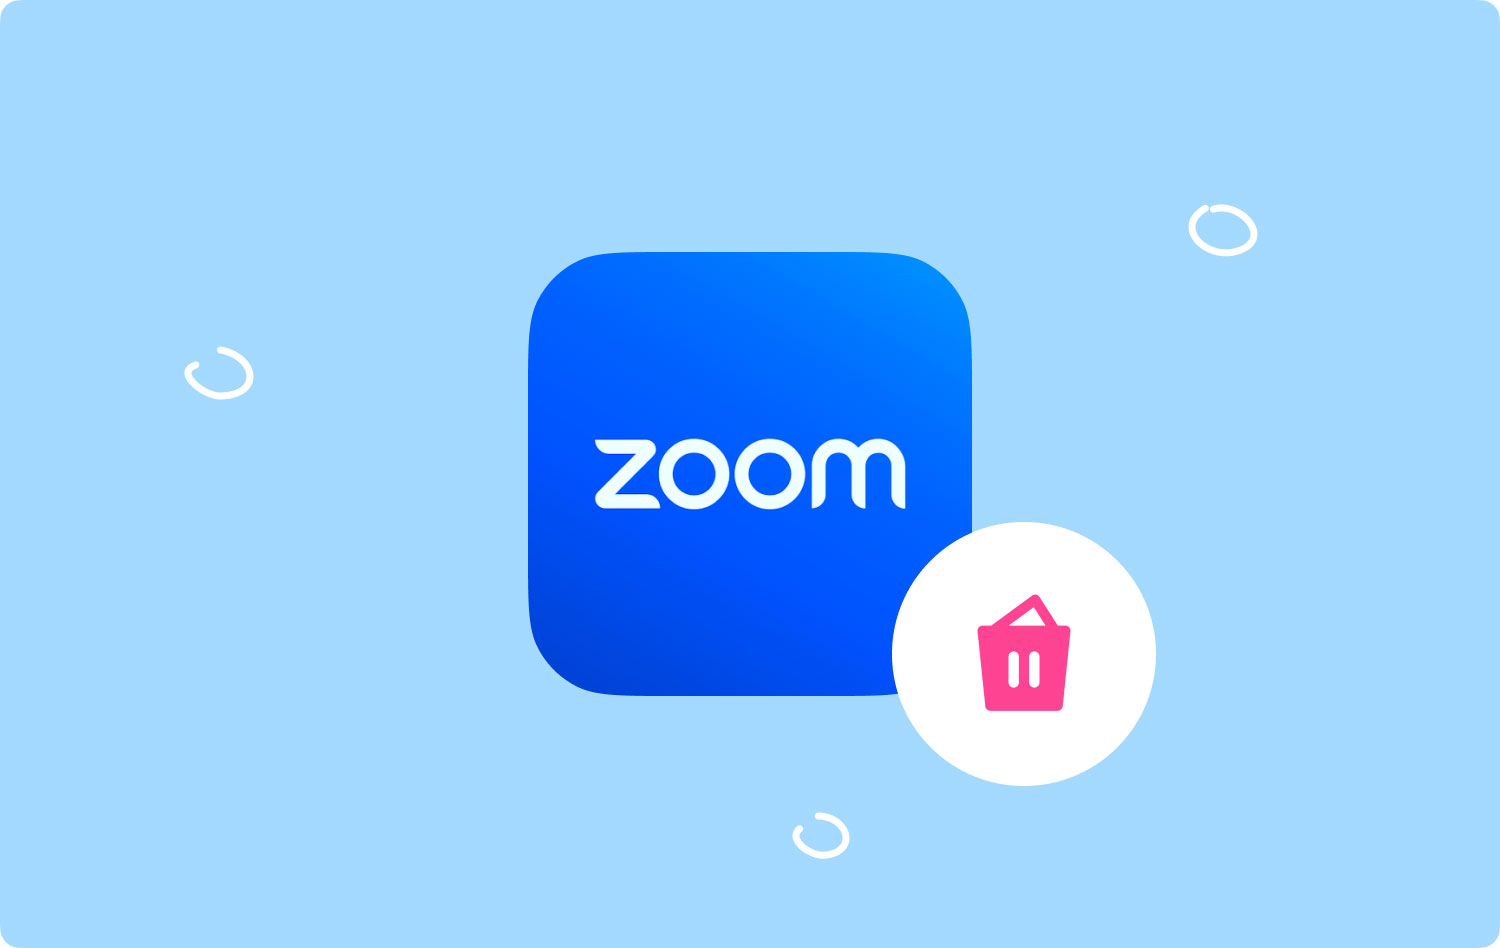 Desinstalar Zoom en Mac